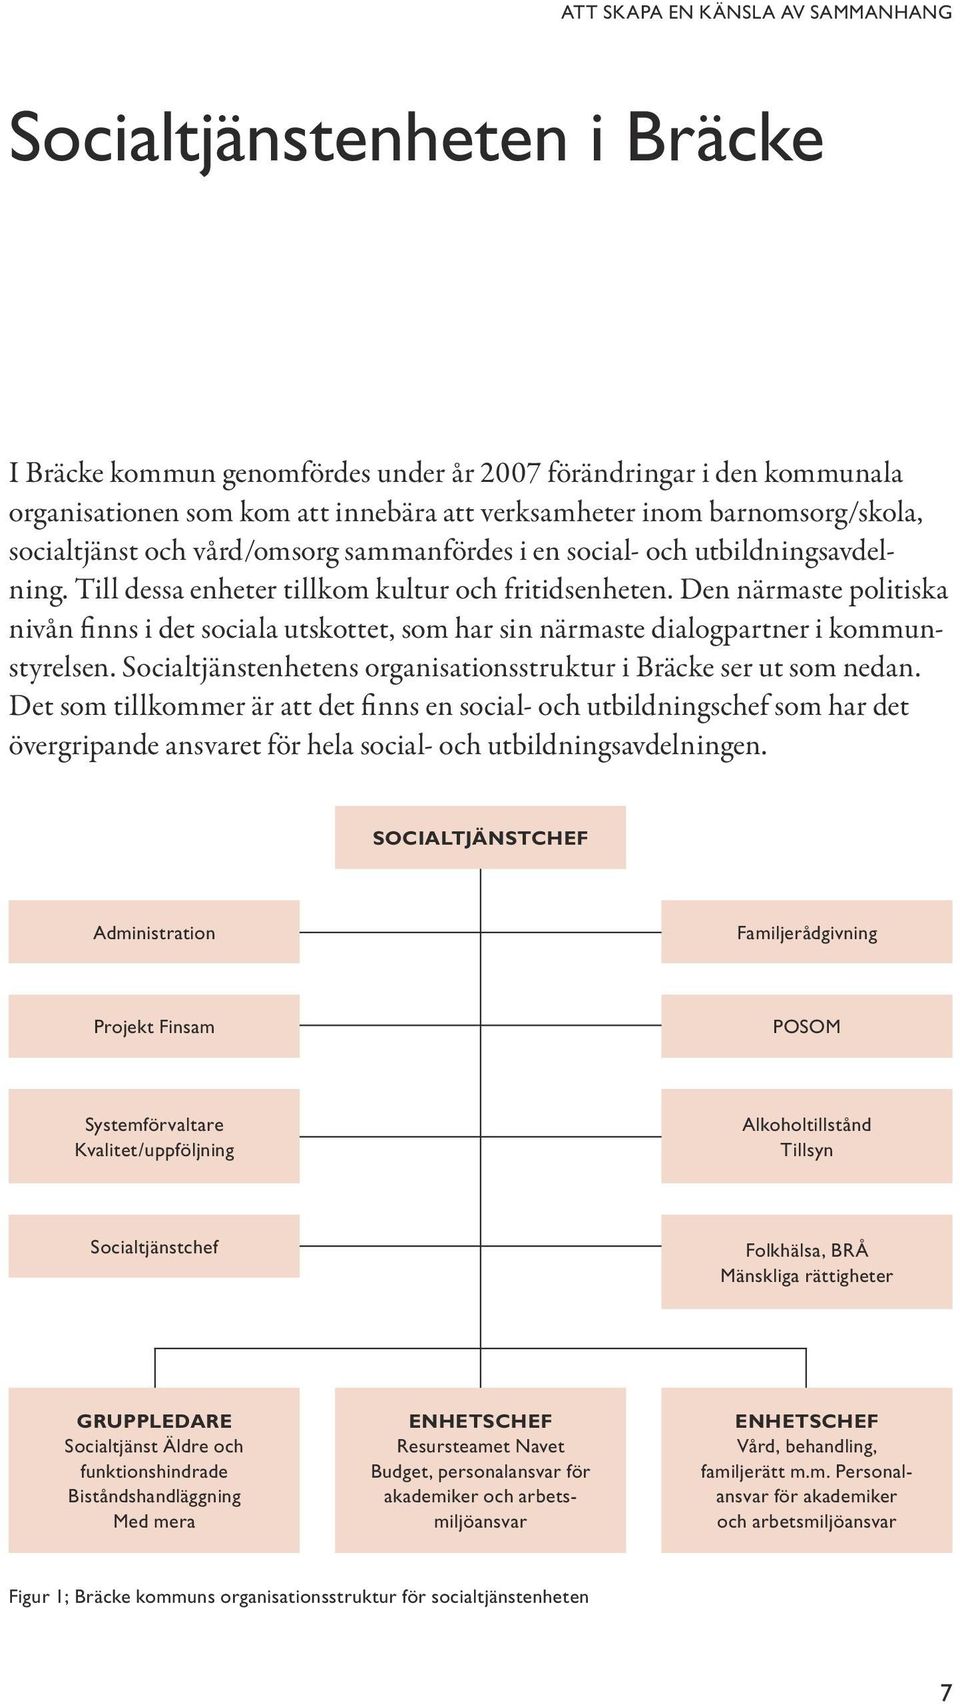 Den närmaste politiska nivån finns i det sociala utskottet, som har sin närmaste dialogpartner i kommunstyrelsen. Socialtjänstenhetens organisationsstruktur i Bräcke ser ut som nedan.